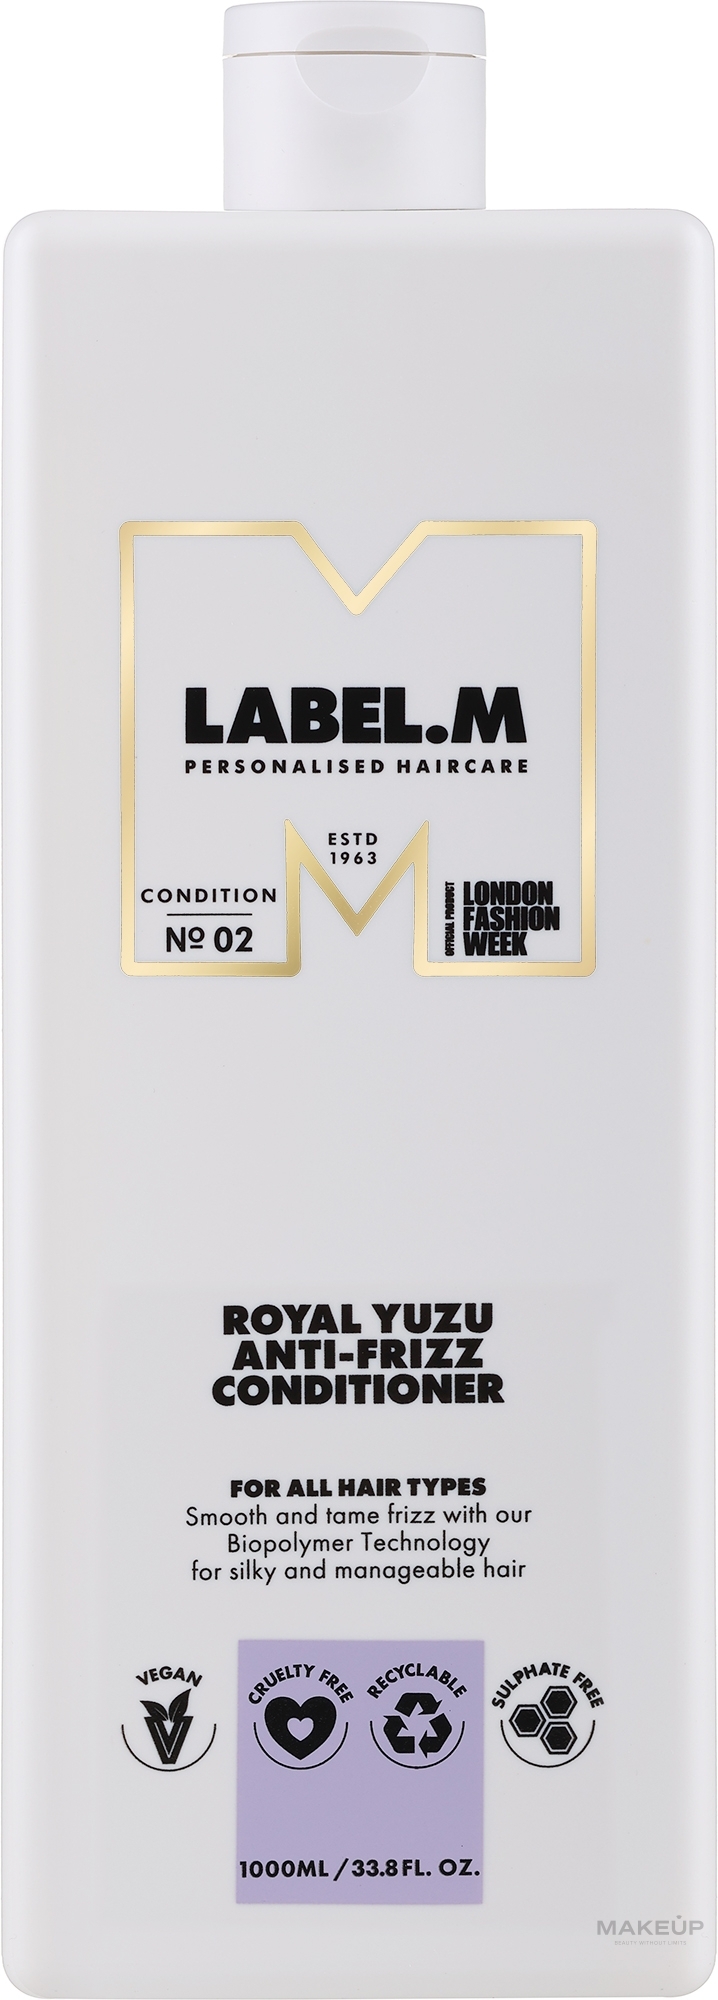 Питательный кондиционер для вьющихся волос - Label.m Professional Royal Yuzu Anti-Frizz Conditioner — фото 1000ml